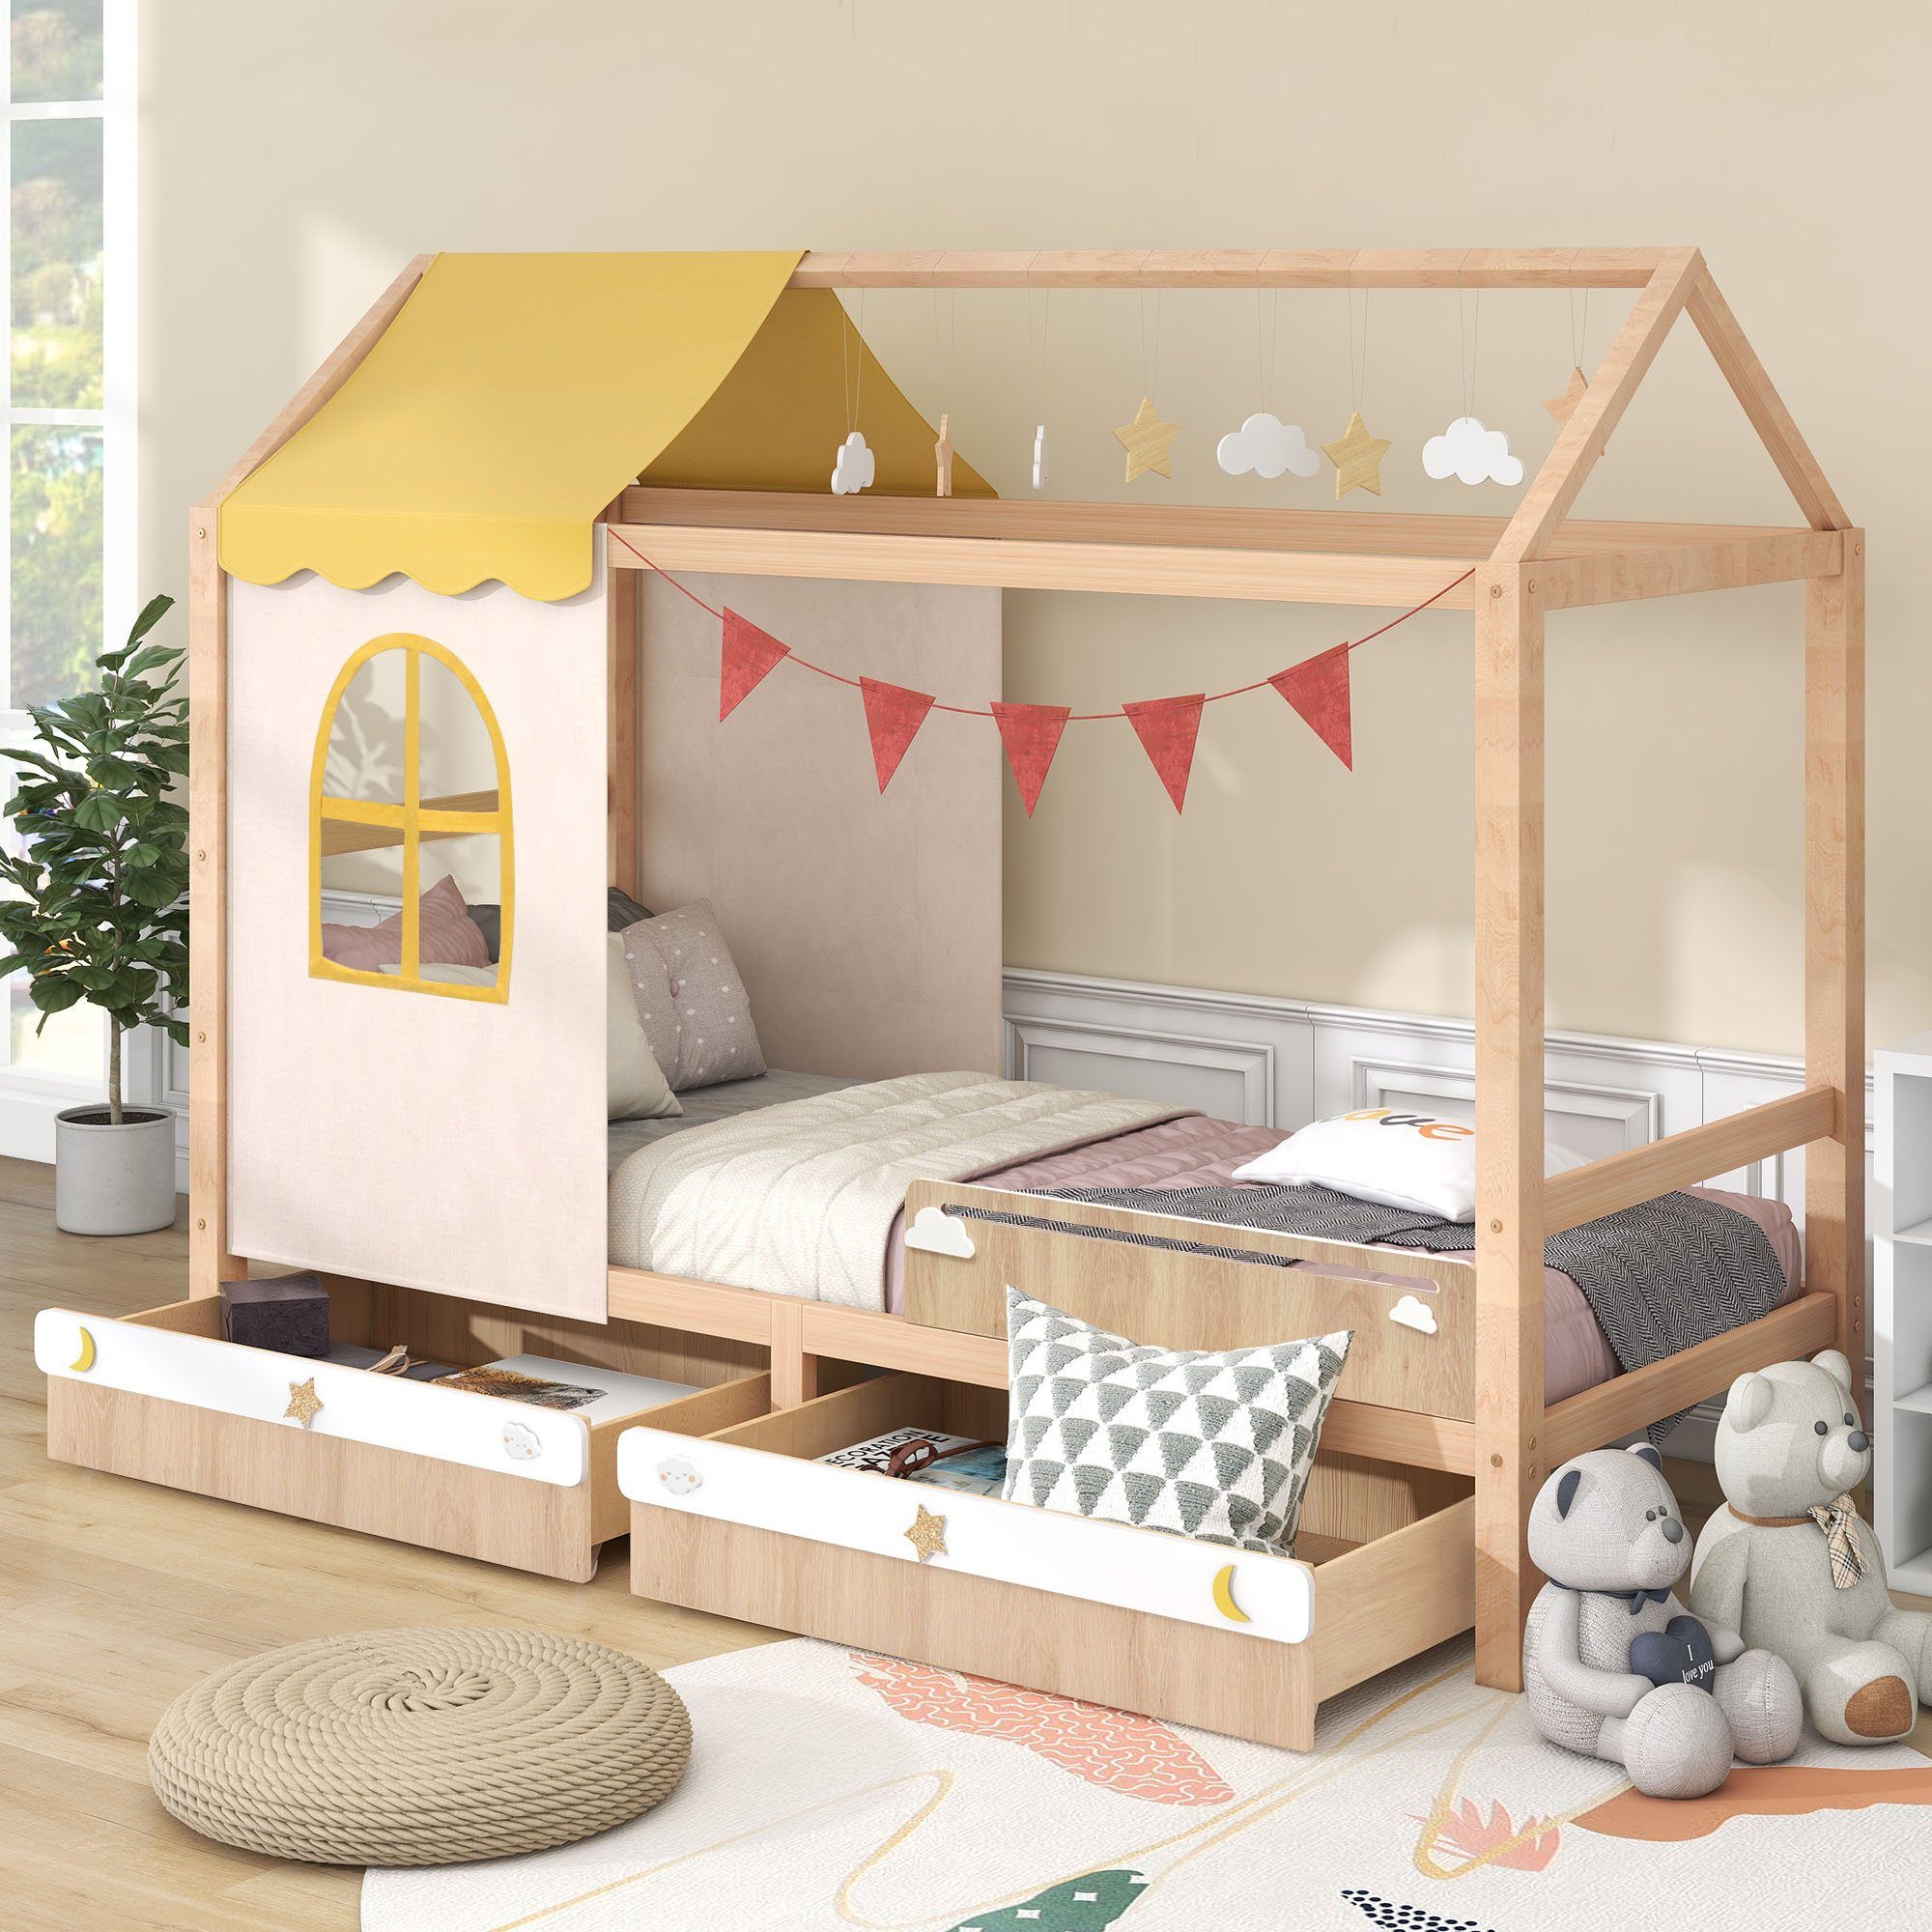 Flieks Kinderbett, Hausbett mit Dekoration und 2 Schubladen Kiefer 90x200cm | Jugendbetten